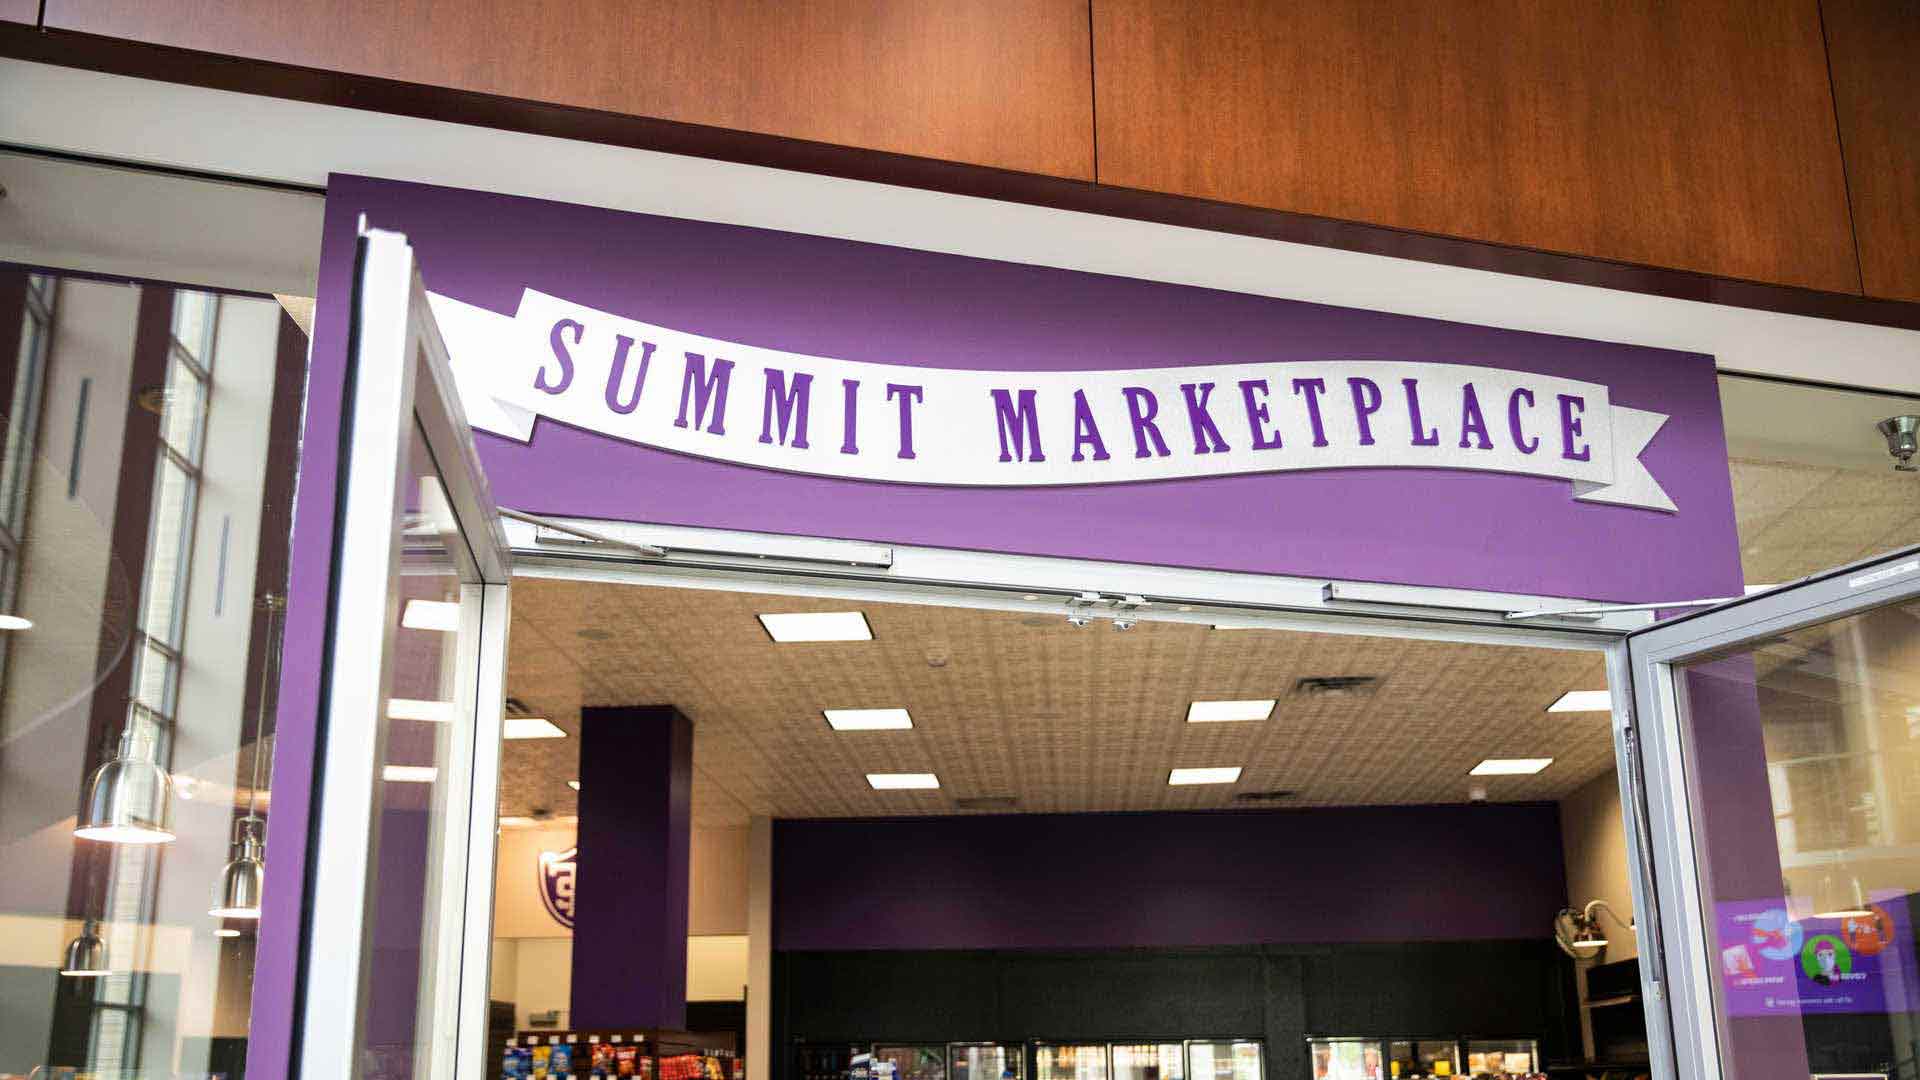 Summit Marketplace signage